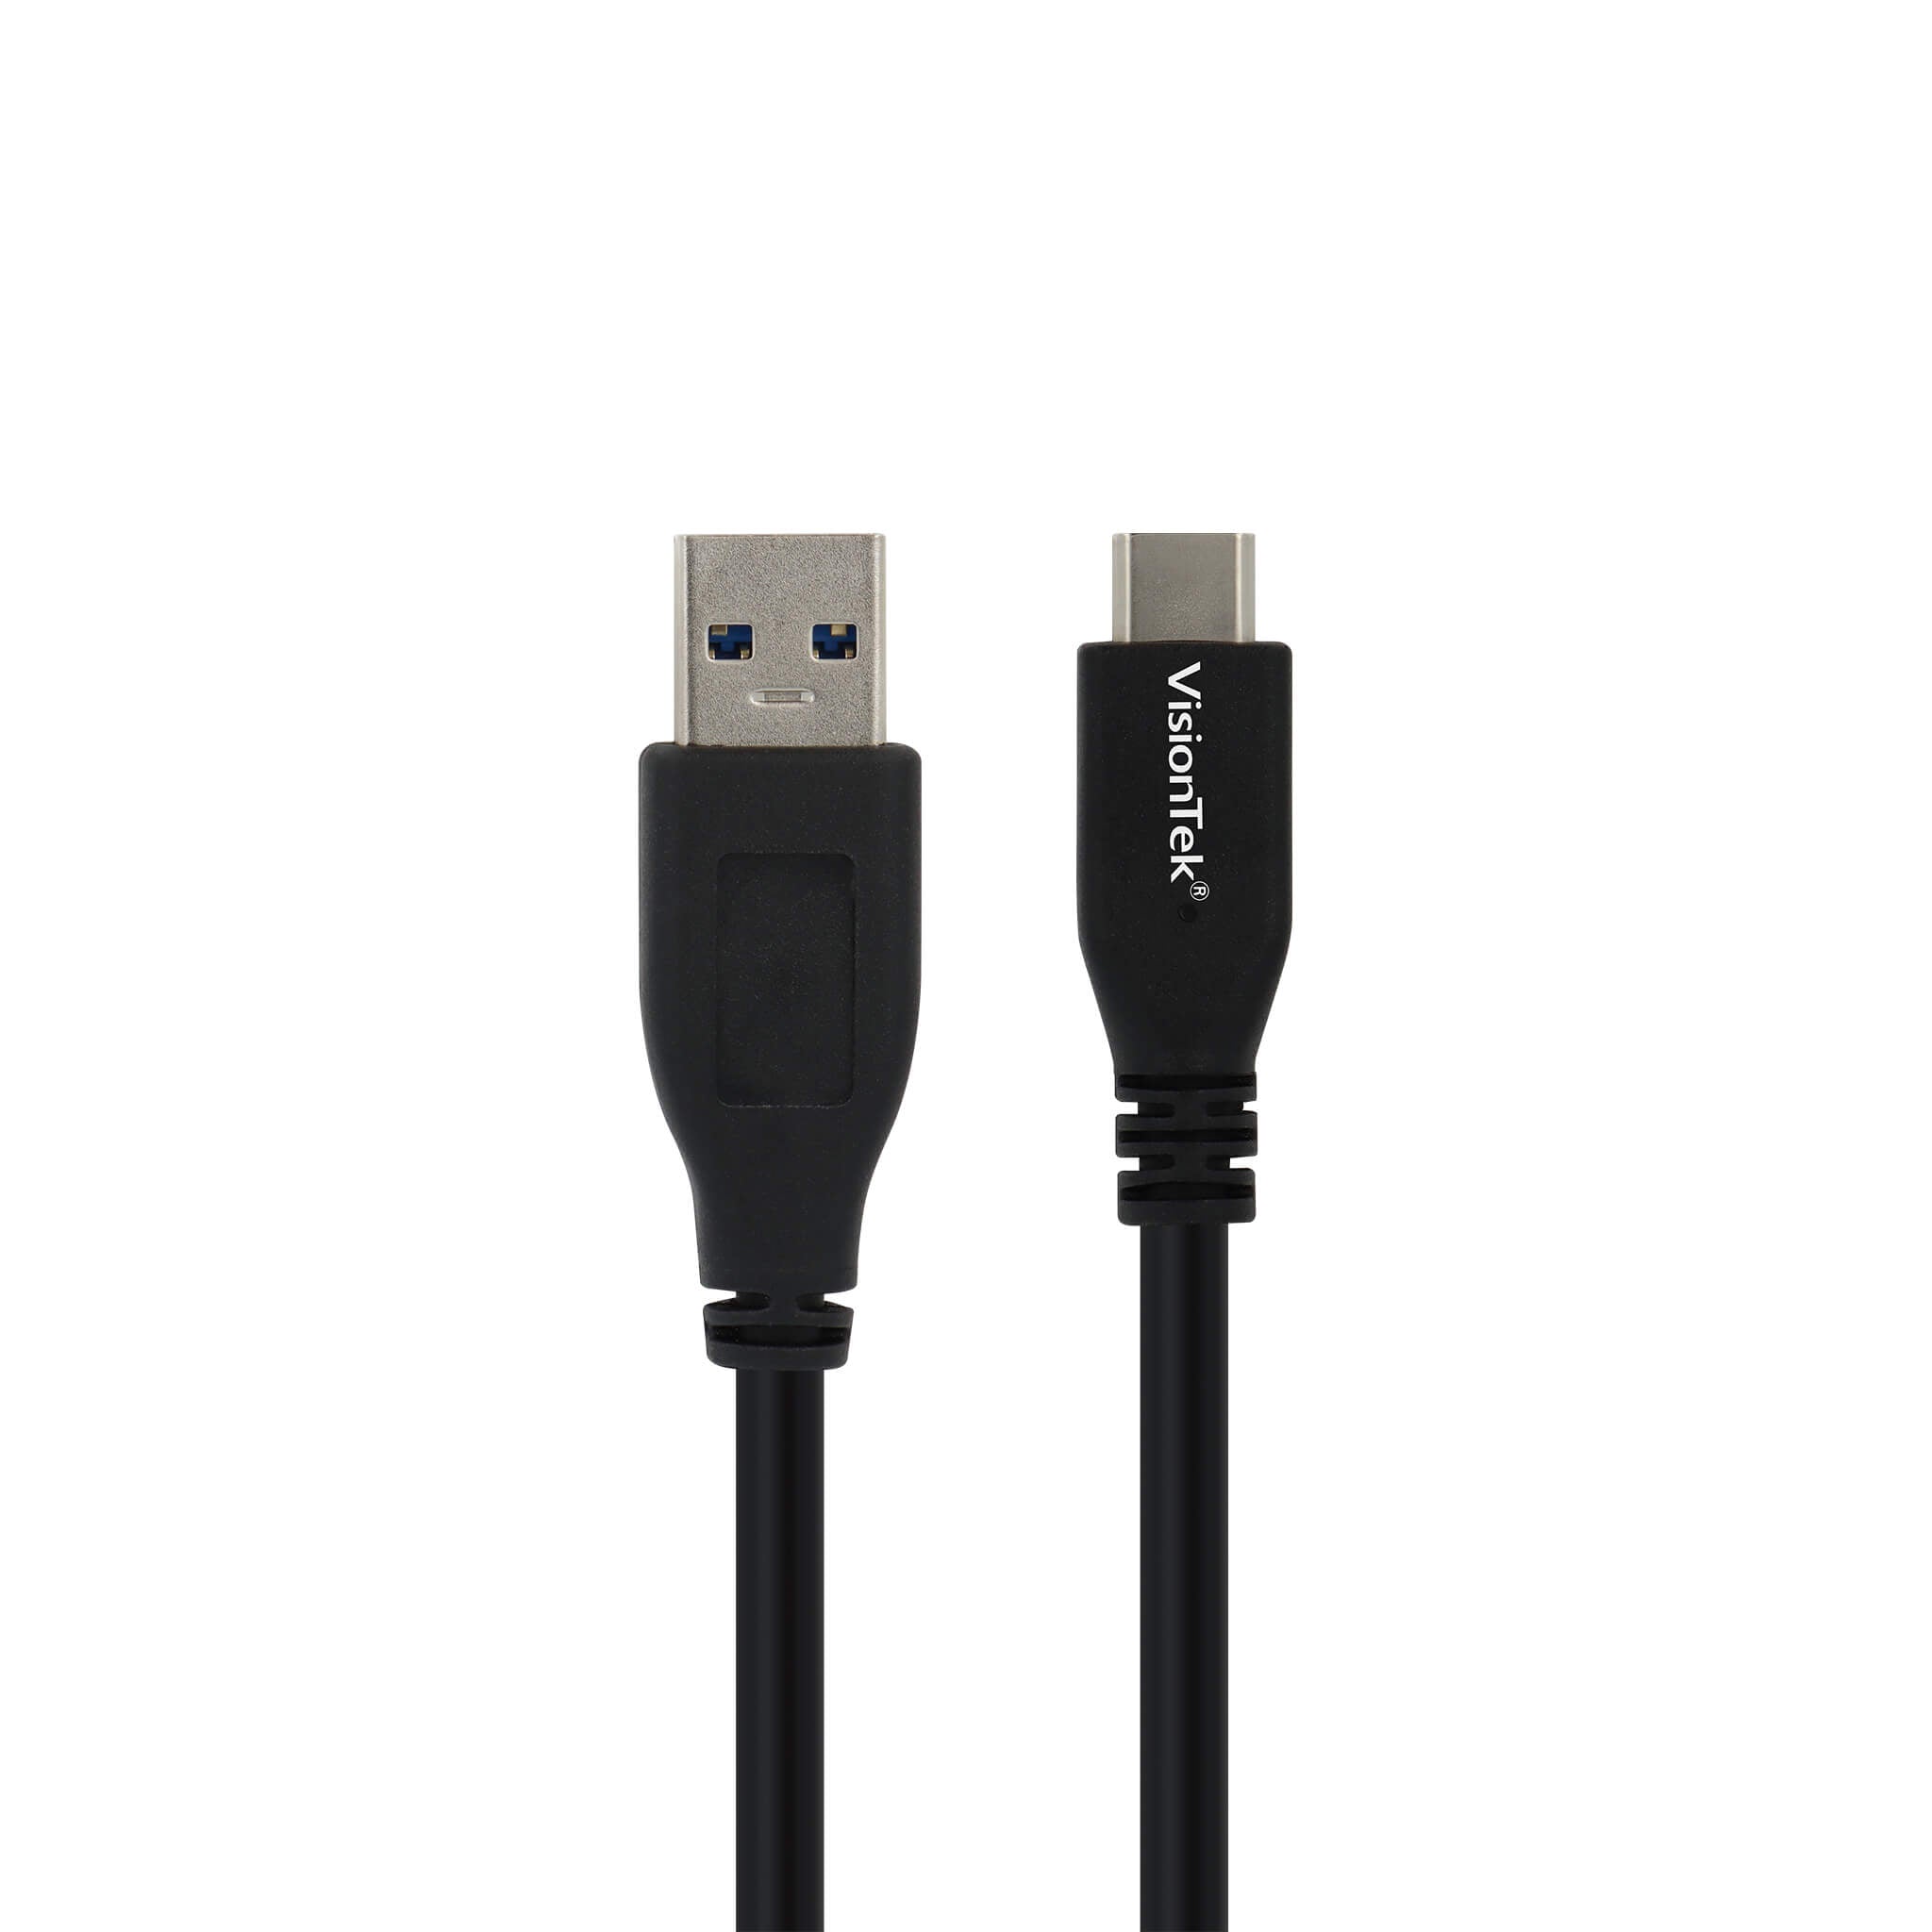 medeleerling Vijftig Intens USB-C to USB-A 3.1 Gen 2 Cable 1 Meter (M/M) – VisionTek.com